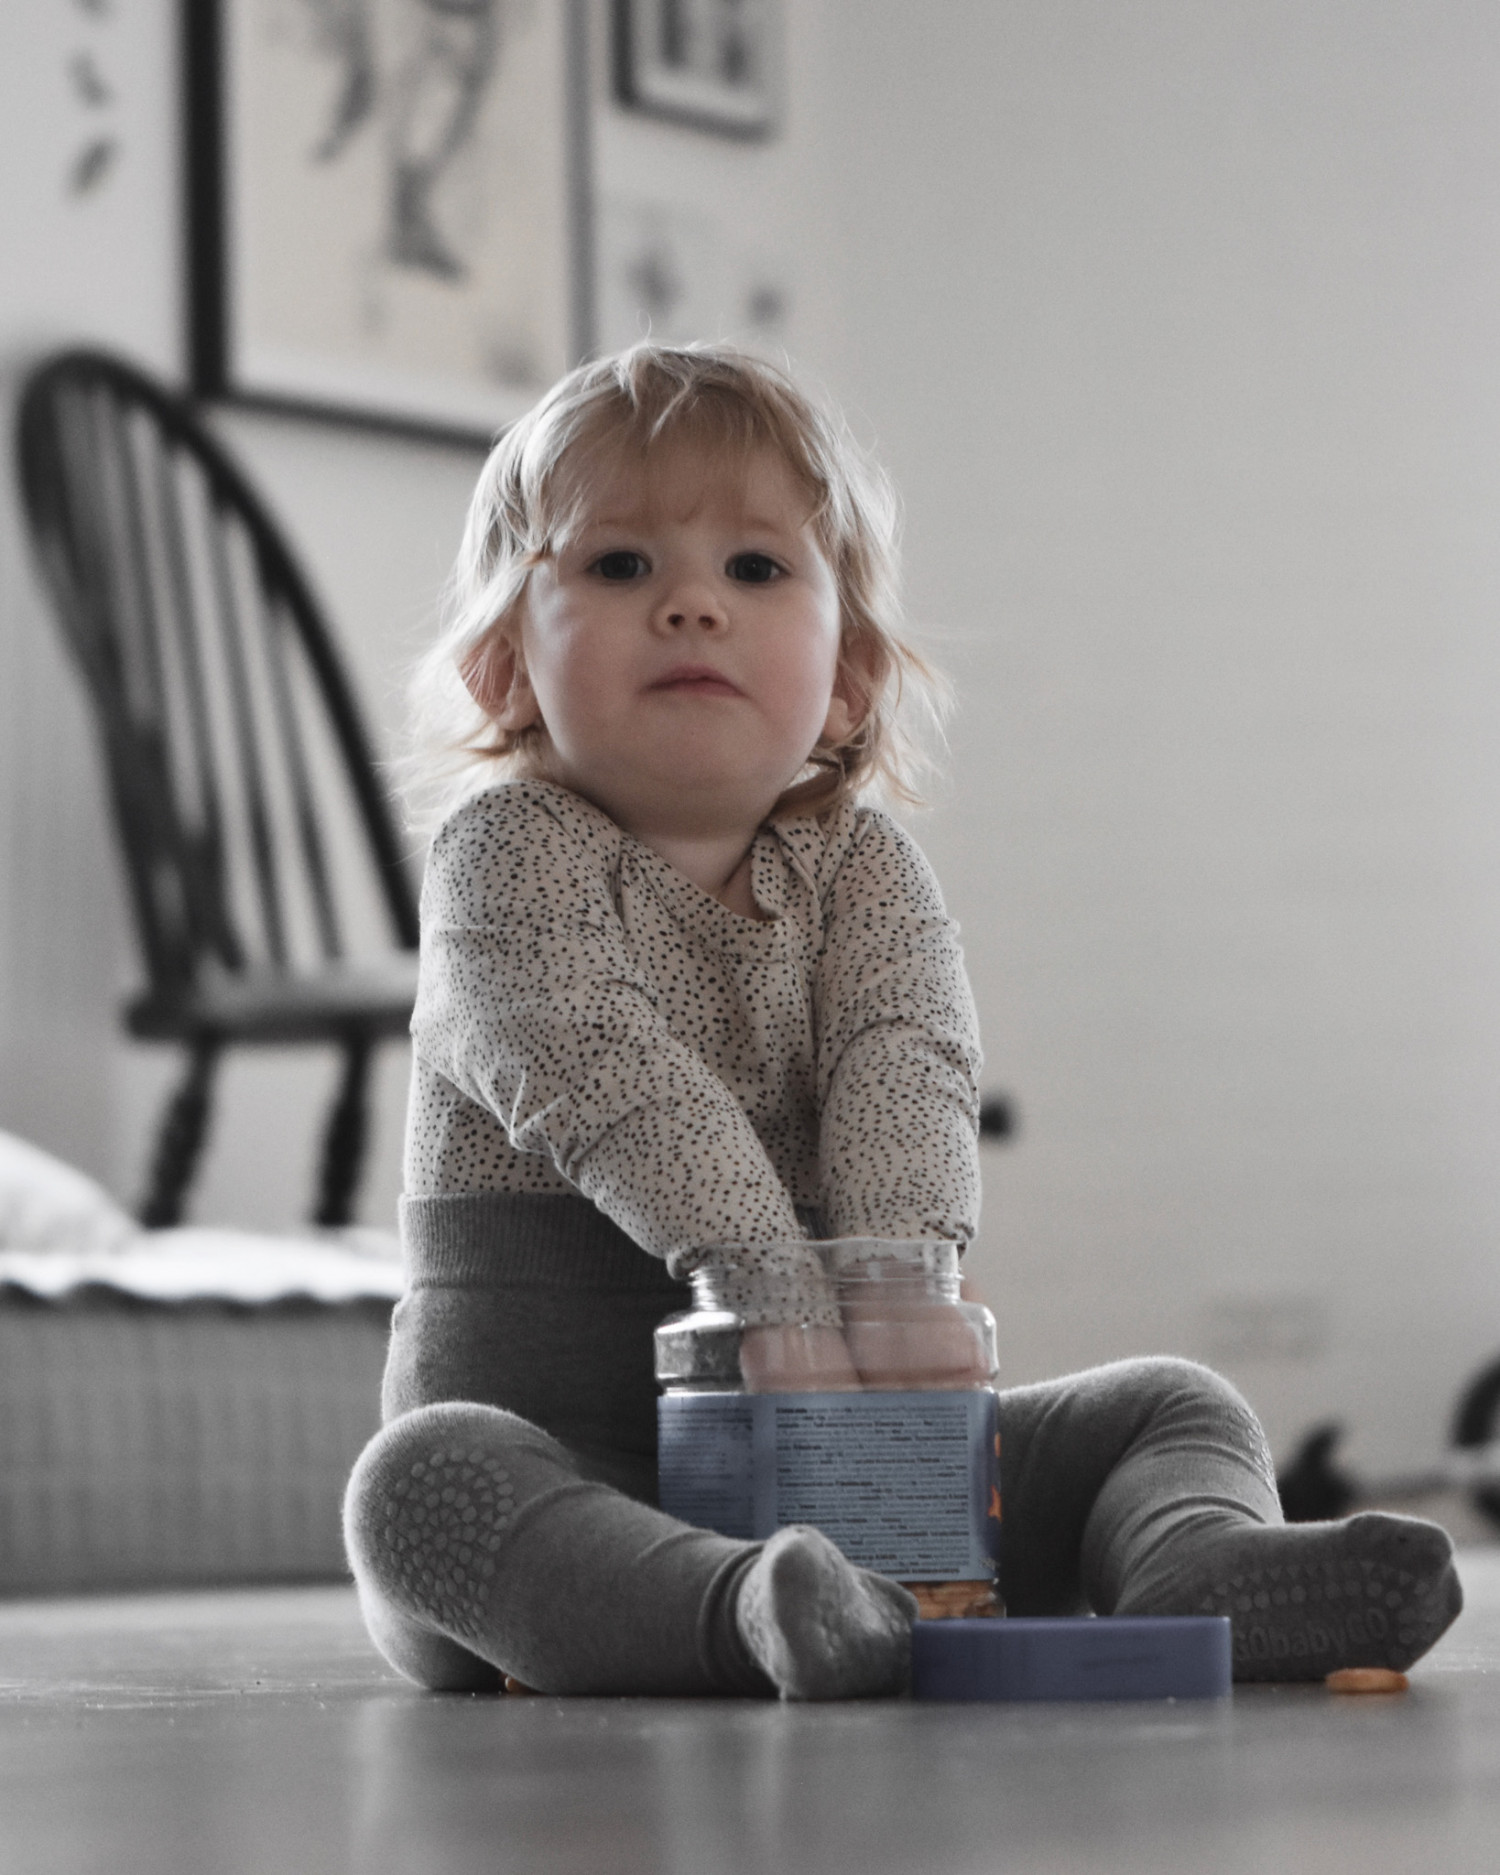 TEST danske GoBabyGo (strømper mv.) | Baby | Testfamilien